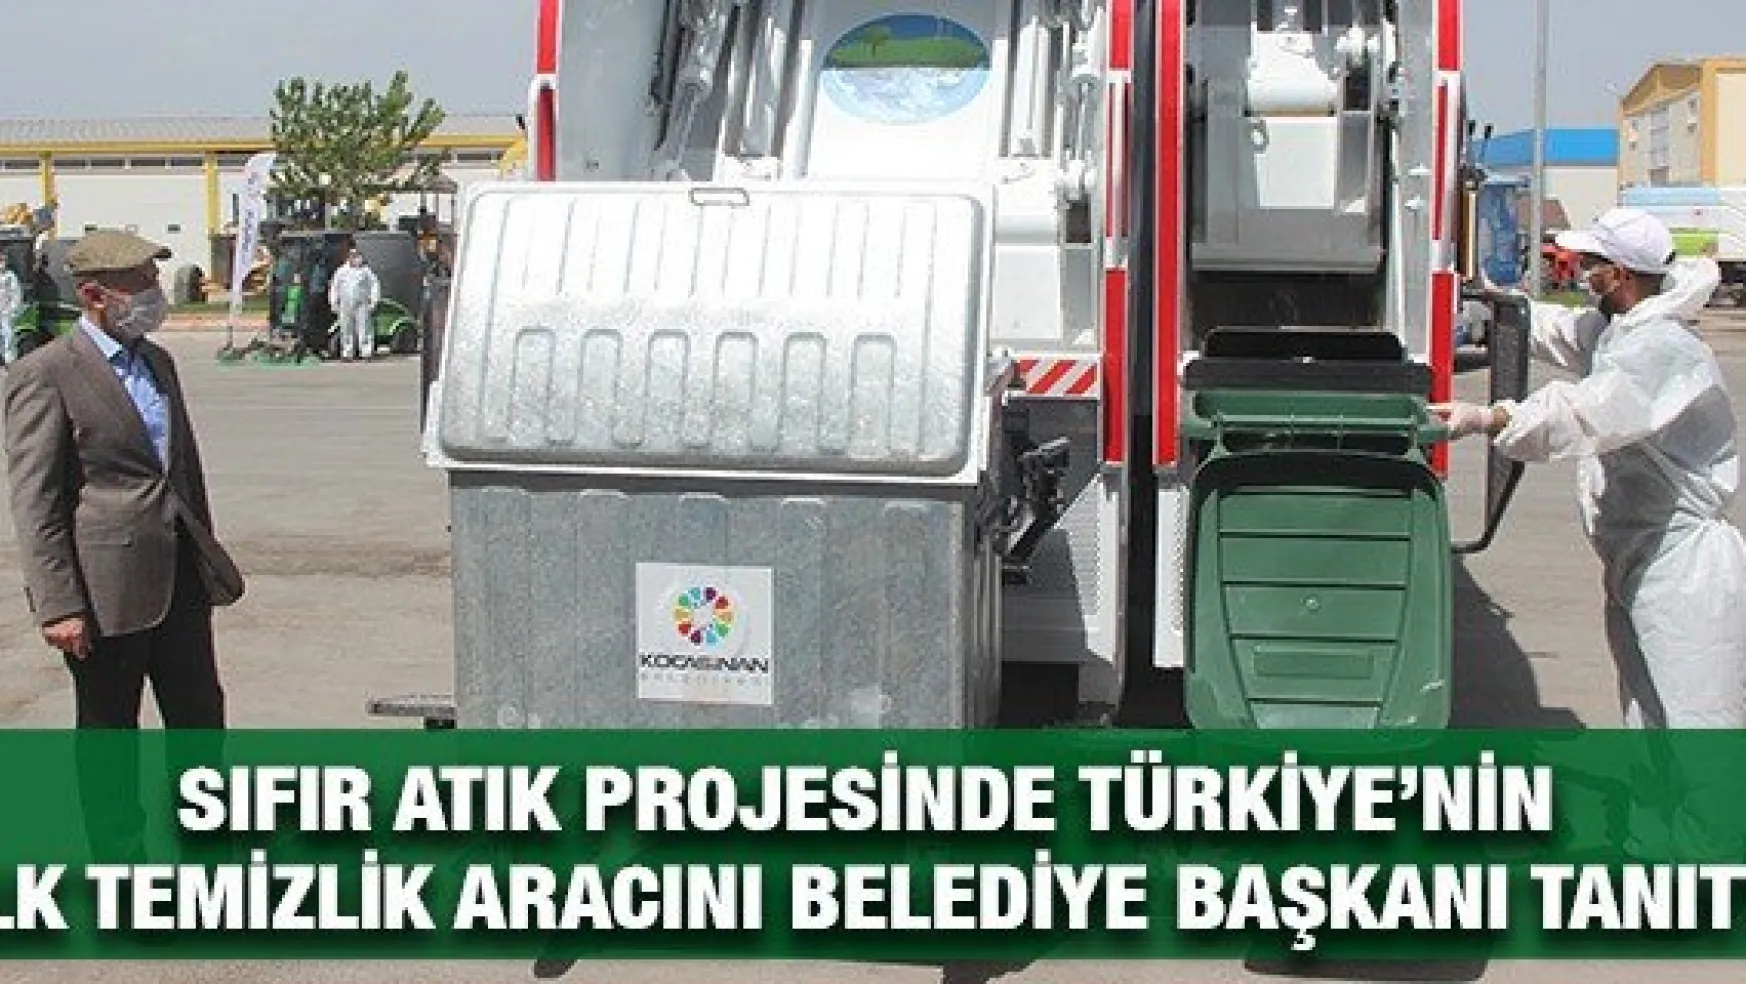 Sıfır Atık Projesinde Türkiye'nin ilk temizlik aracını Belediye Başkanı tanıttı